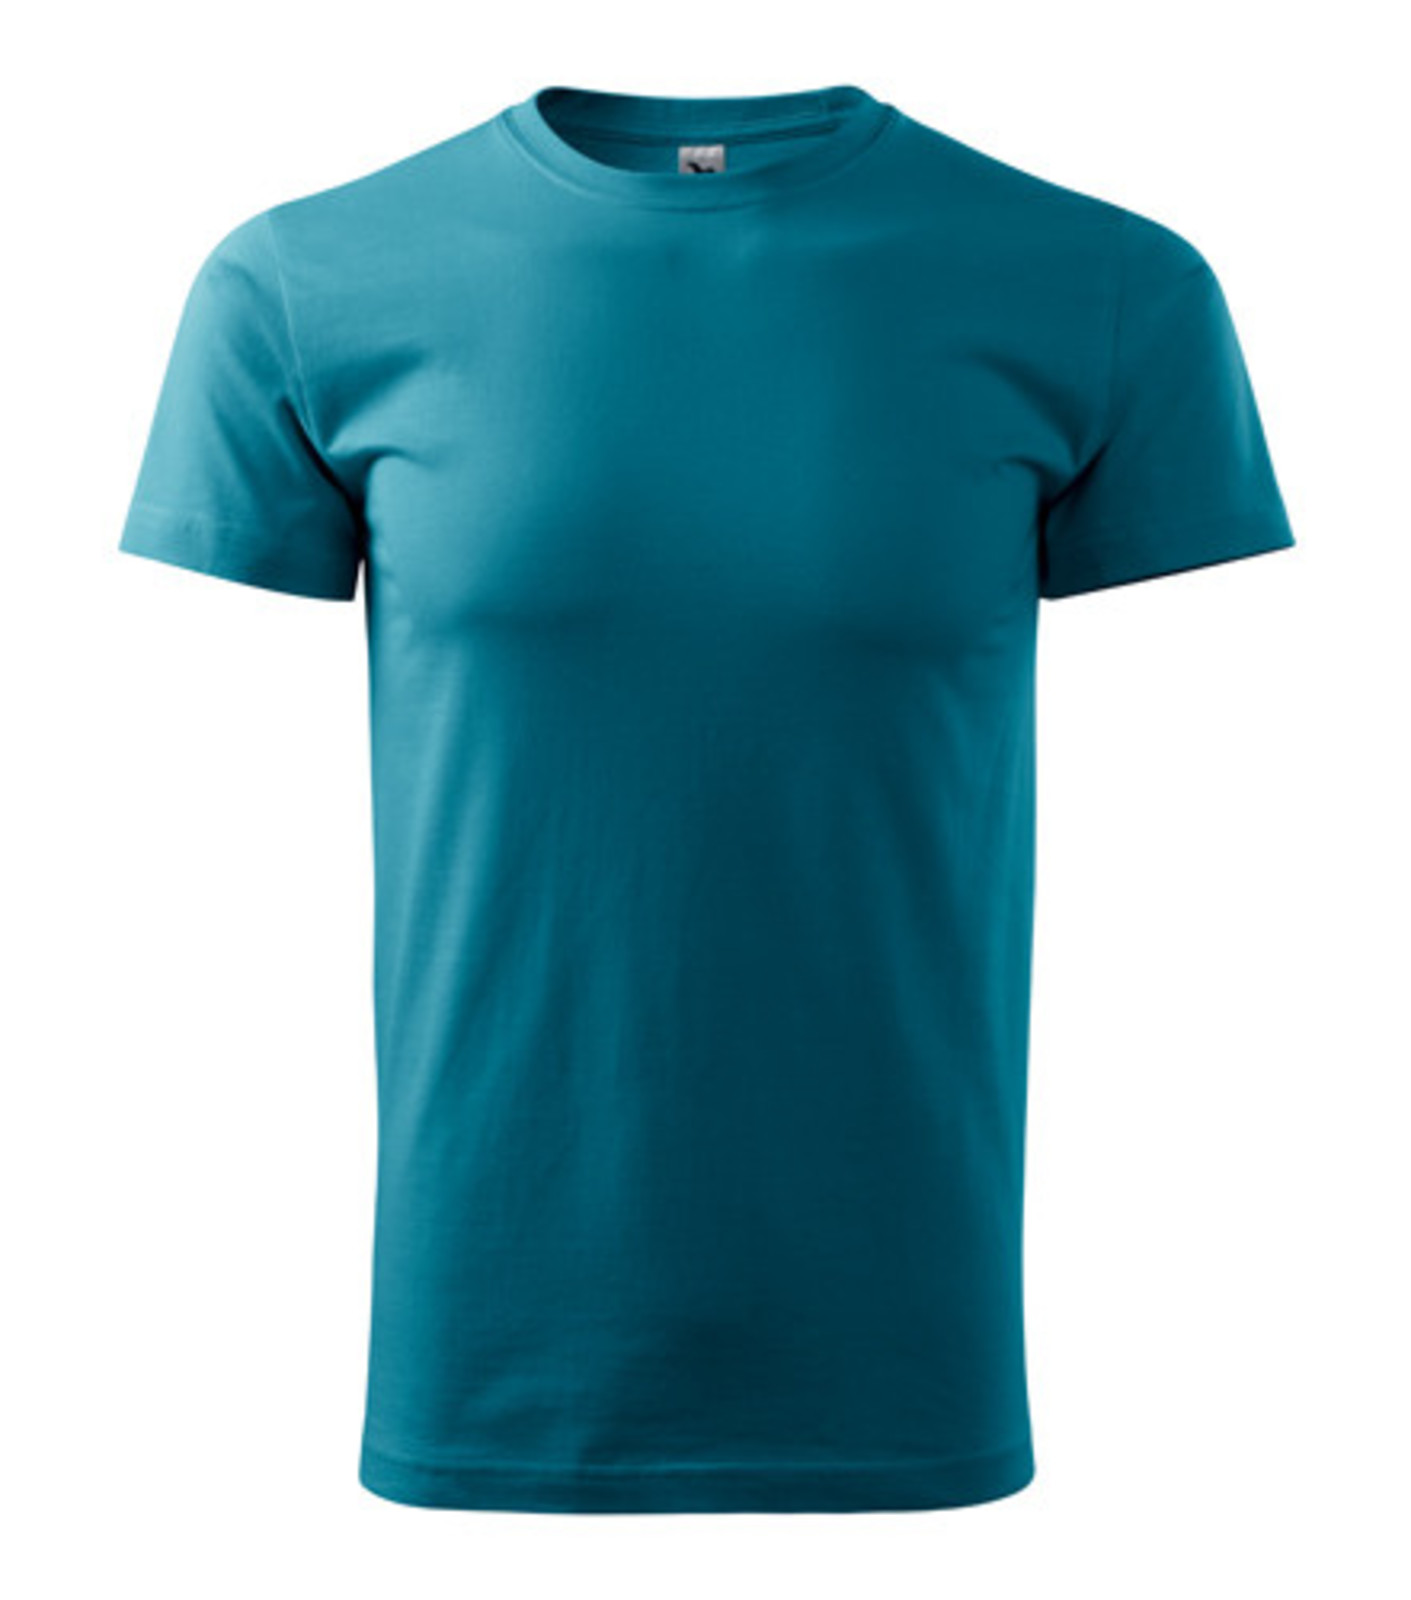 Unisex tričko Malfini Heavy New 137 - veľkosť: L, farba: tm. tyrkys